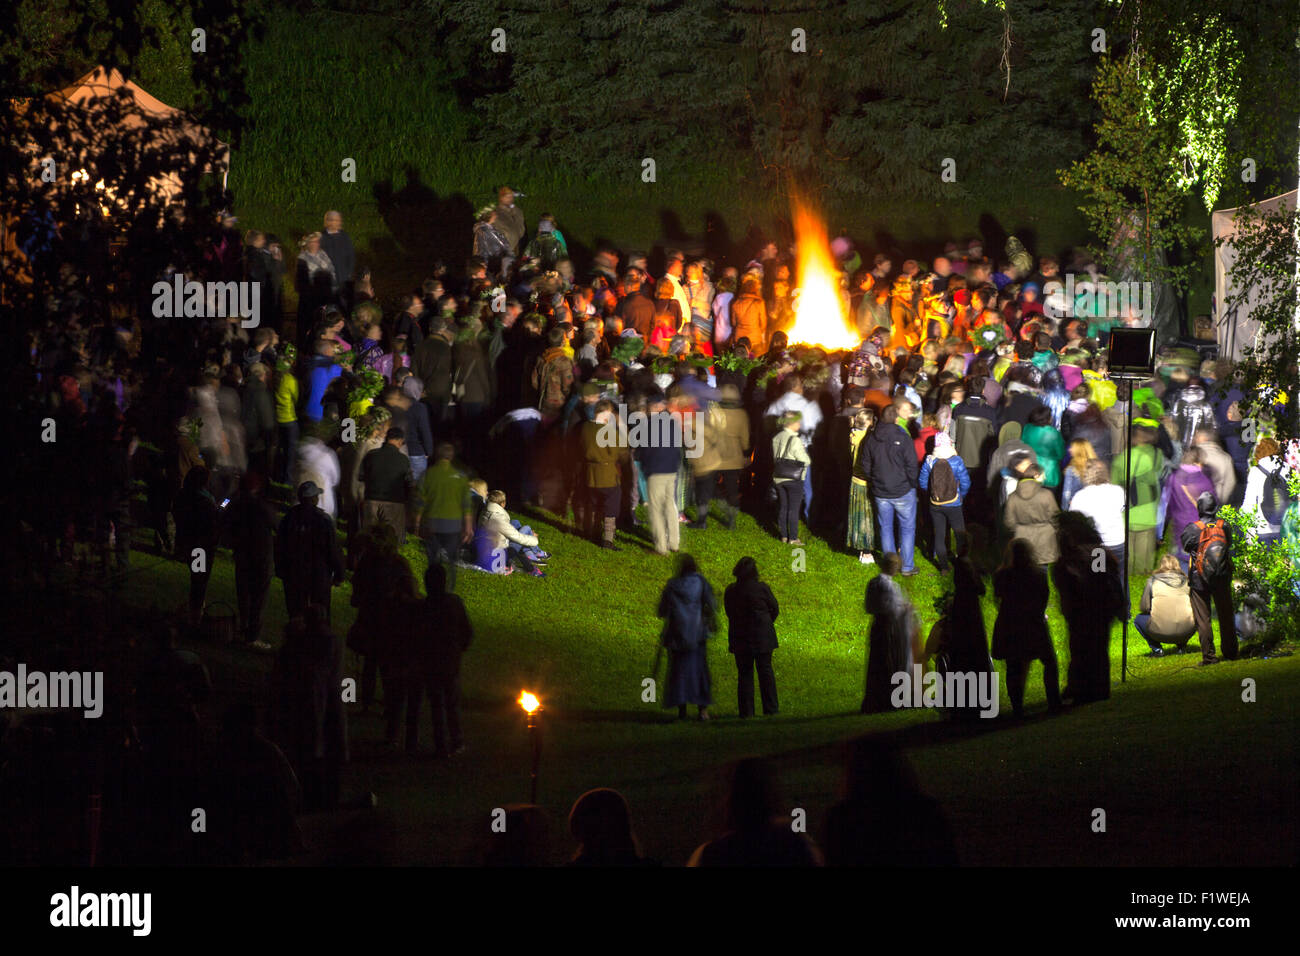 Nacht der Sommersonnenwende ein Lagerfeuer im lettischen Dorf gefeiert. Midsumer oder John es Silvester-Feier Lagerfeuer Stockfoto